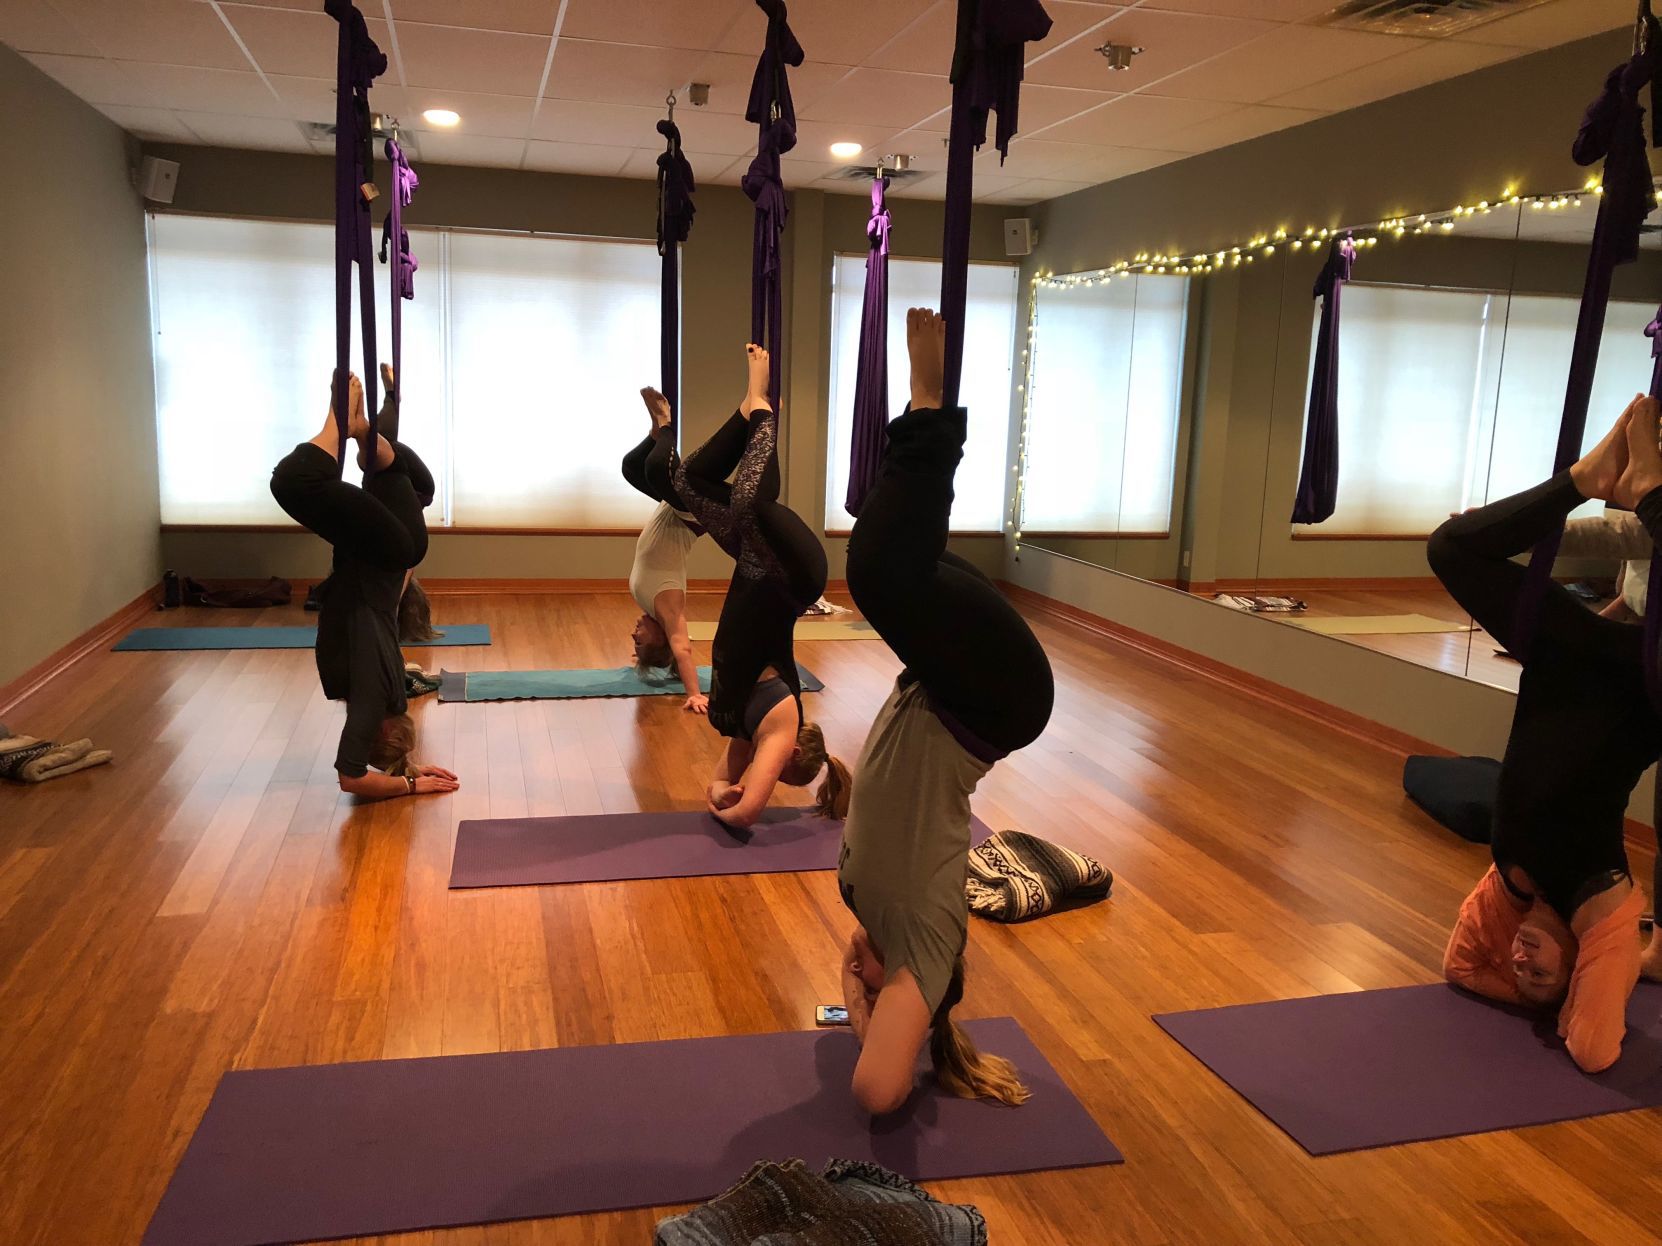 yoga assist class #adjustment #yogaasana #assist #yoga #yogapose  #yogaeverywhere - YouTube